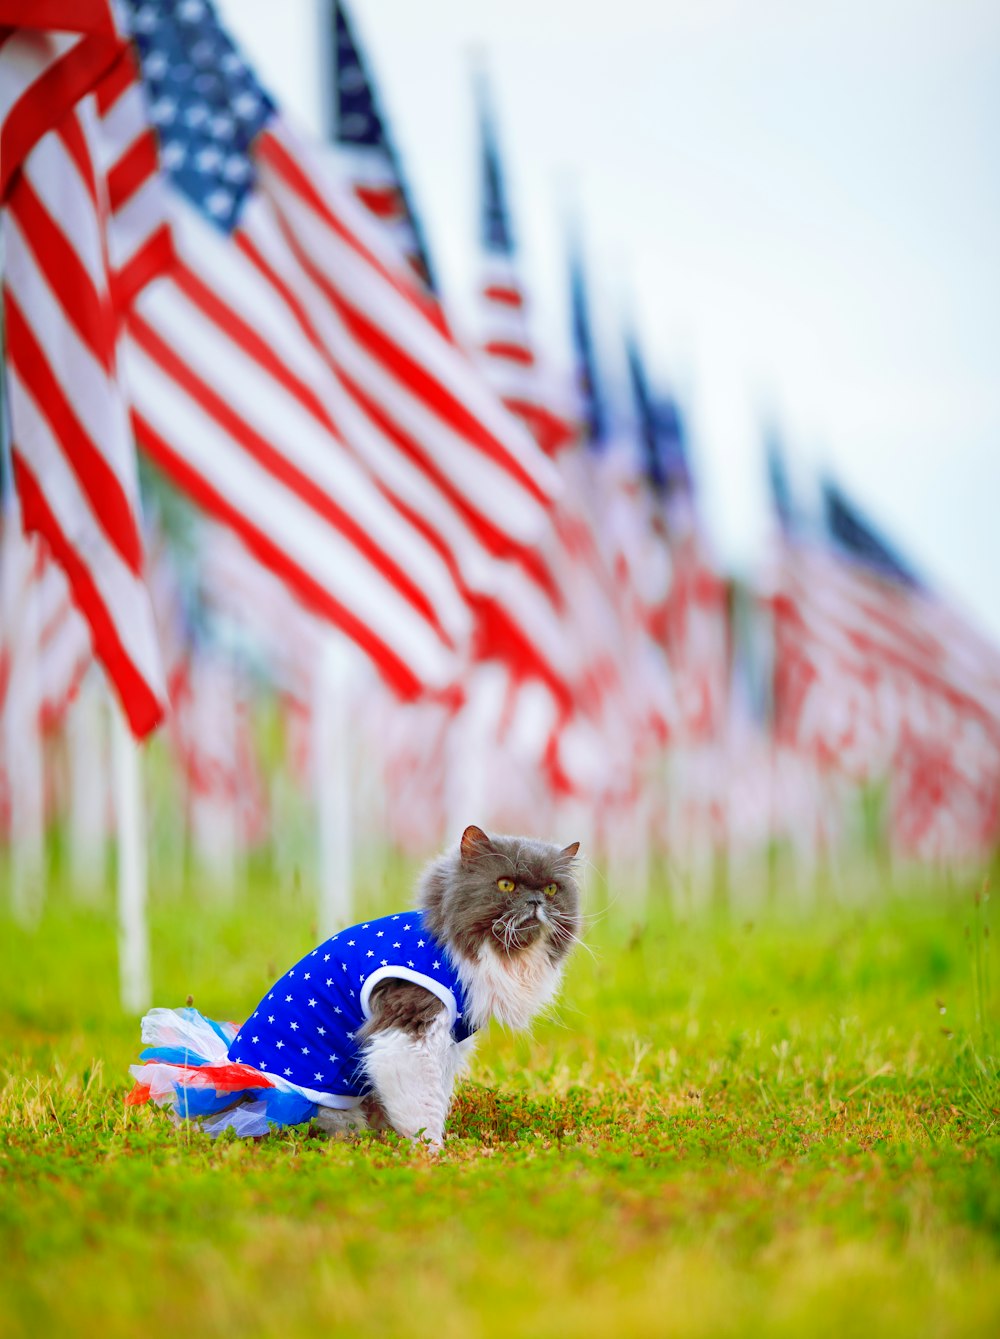 Un chat en chemise bleue devant un drapeau